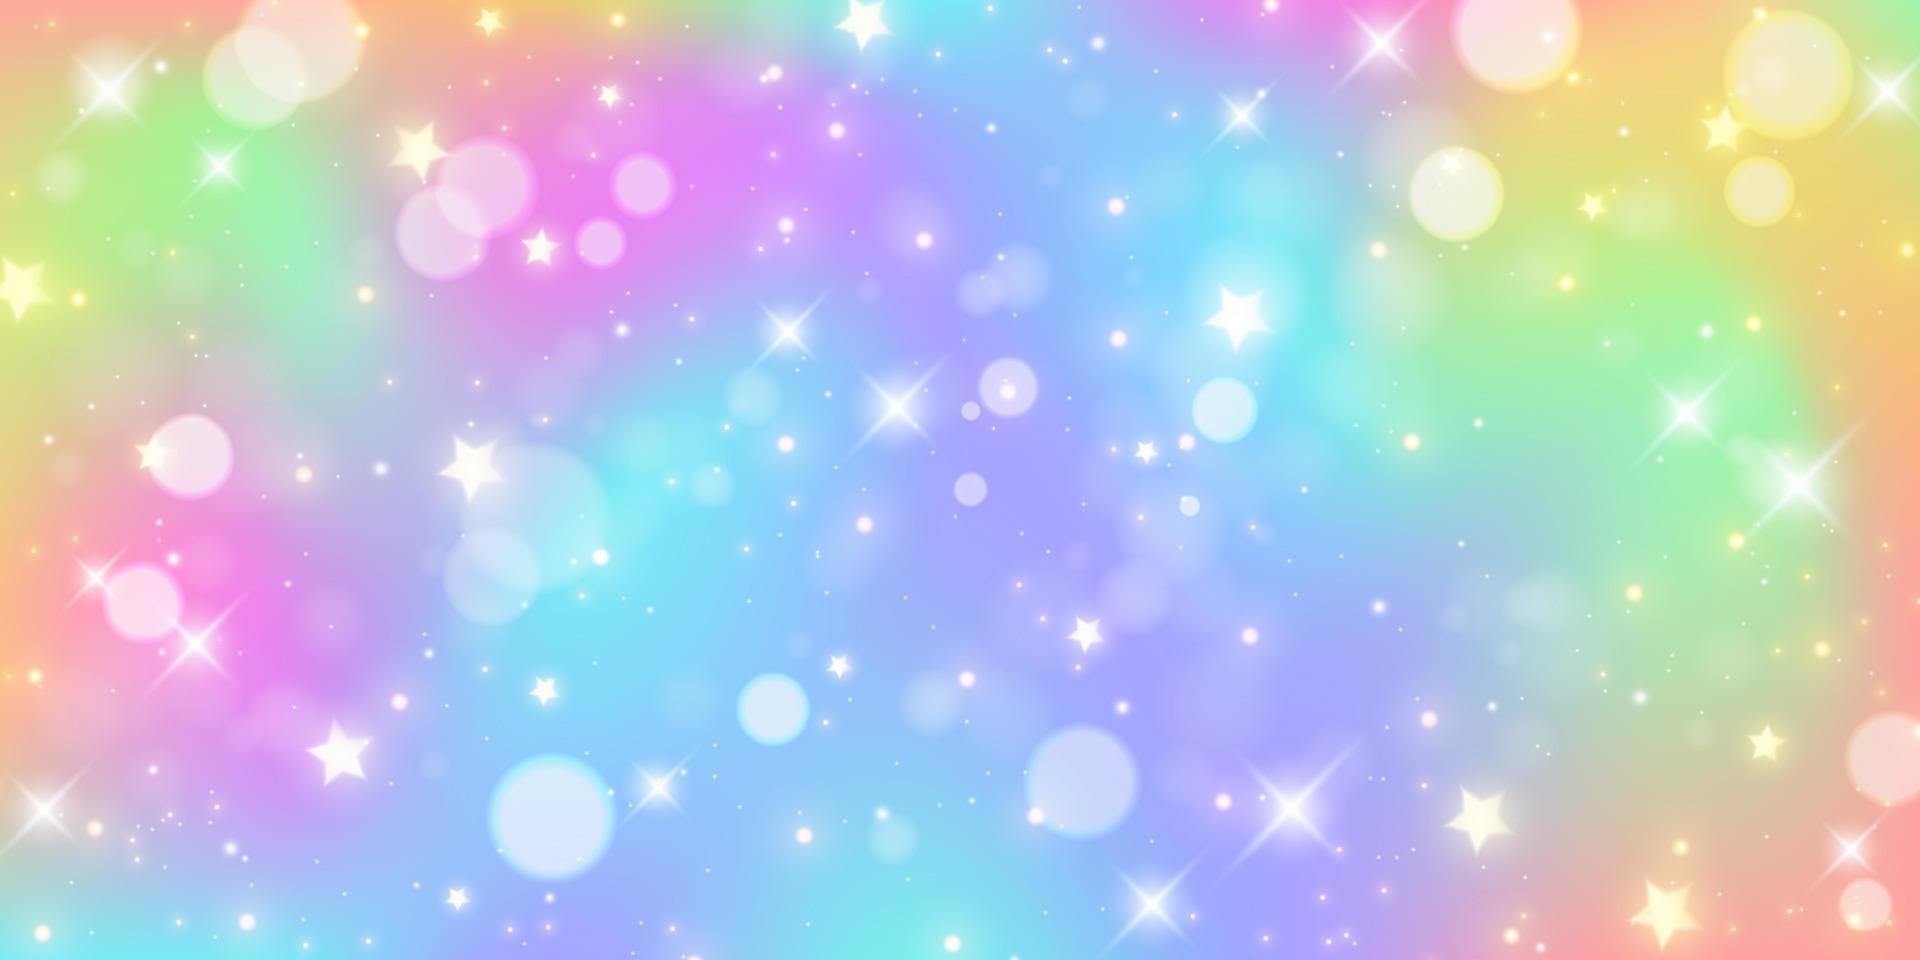 regnbåge bakgrund. pastell Färg abstrakt mönster med bokeh och stjärnor. enhörning fantasi himmel med glitter. vektor